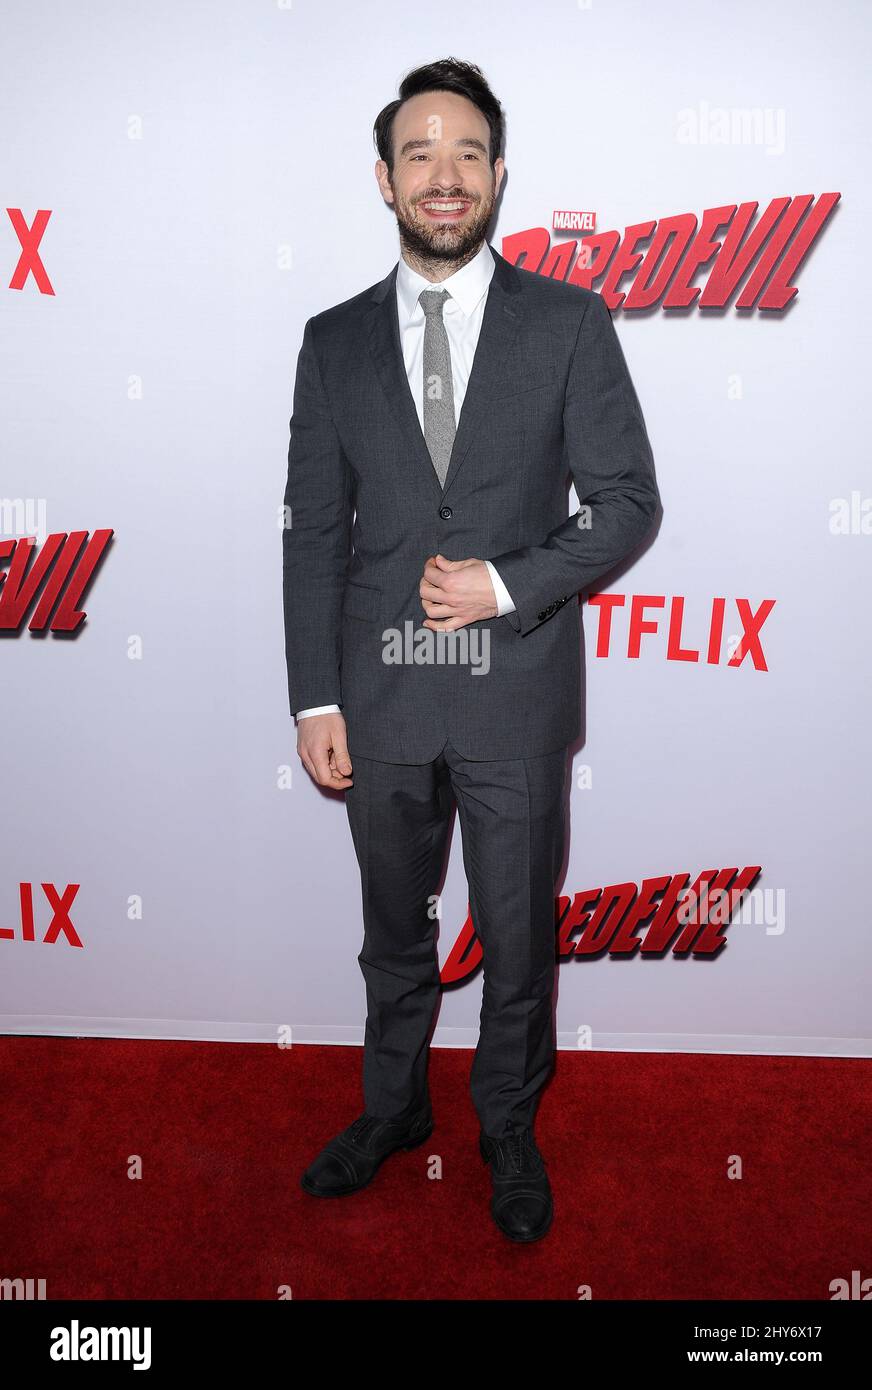 Charlie Cox participe à la première de « Daredevil » à Los Angeles Banque D'Images